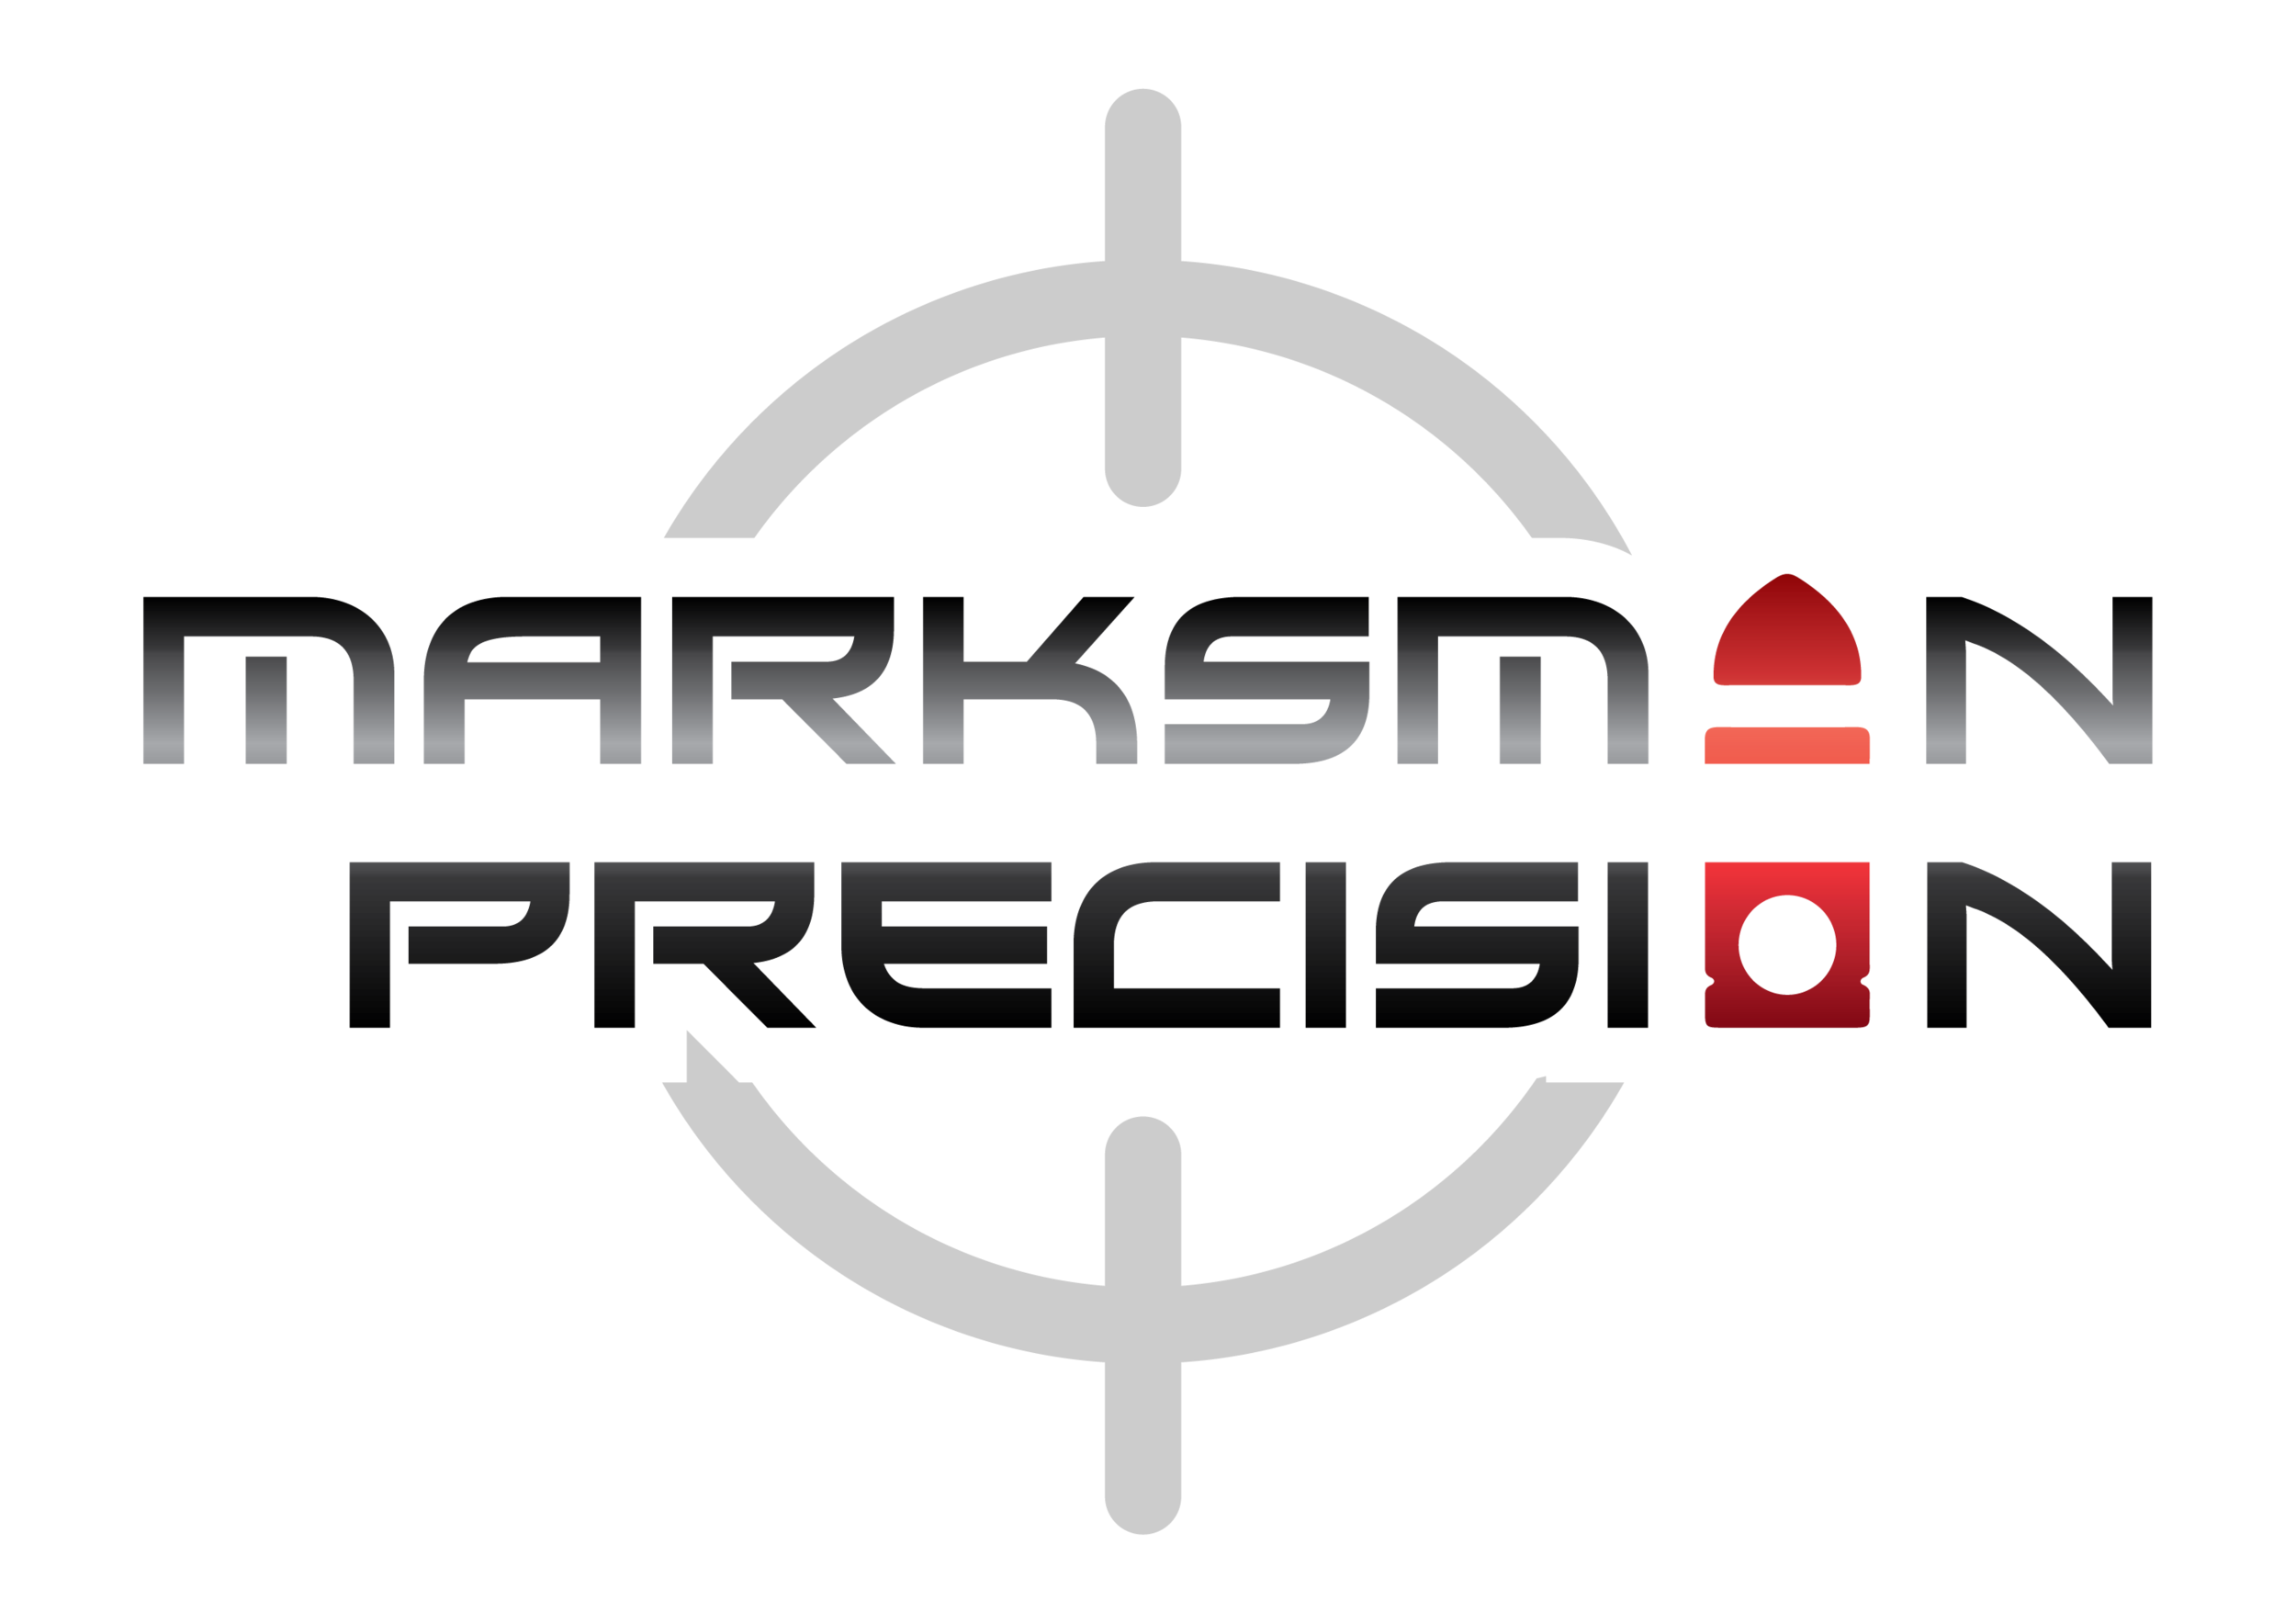 Marksman Precision